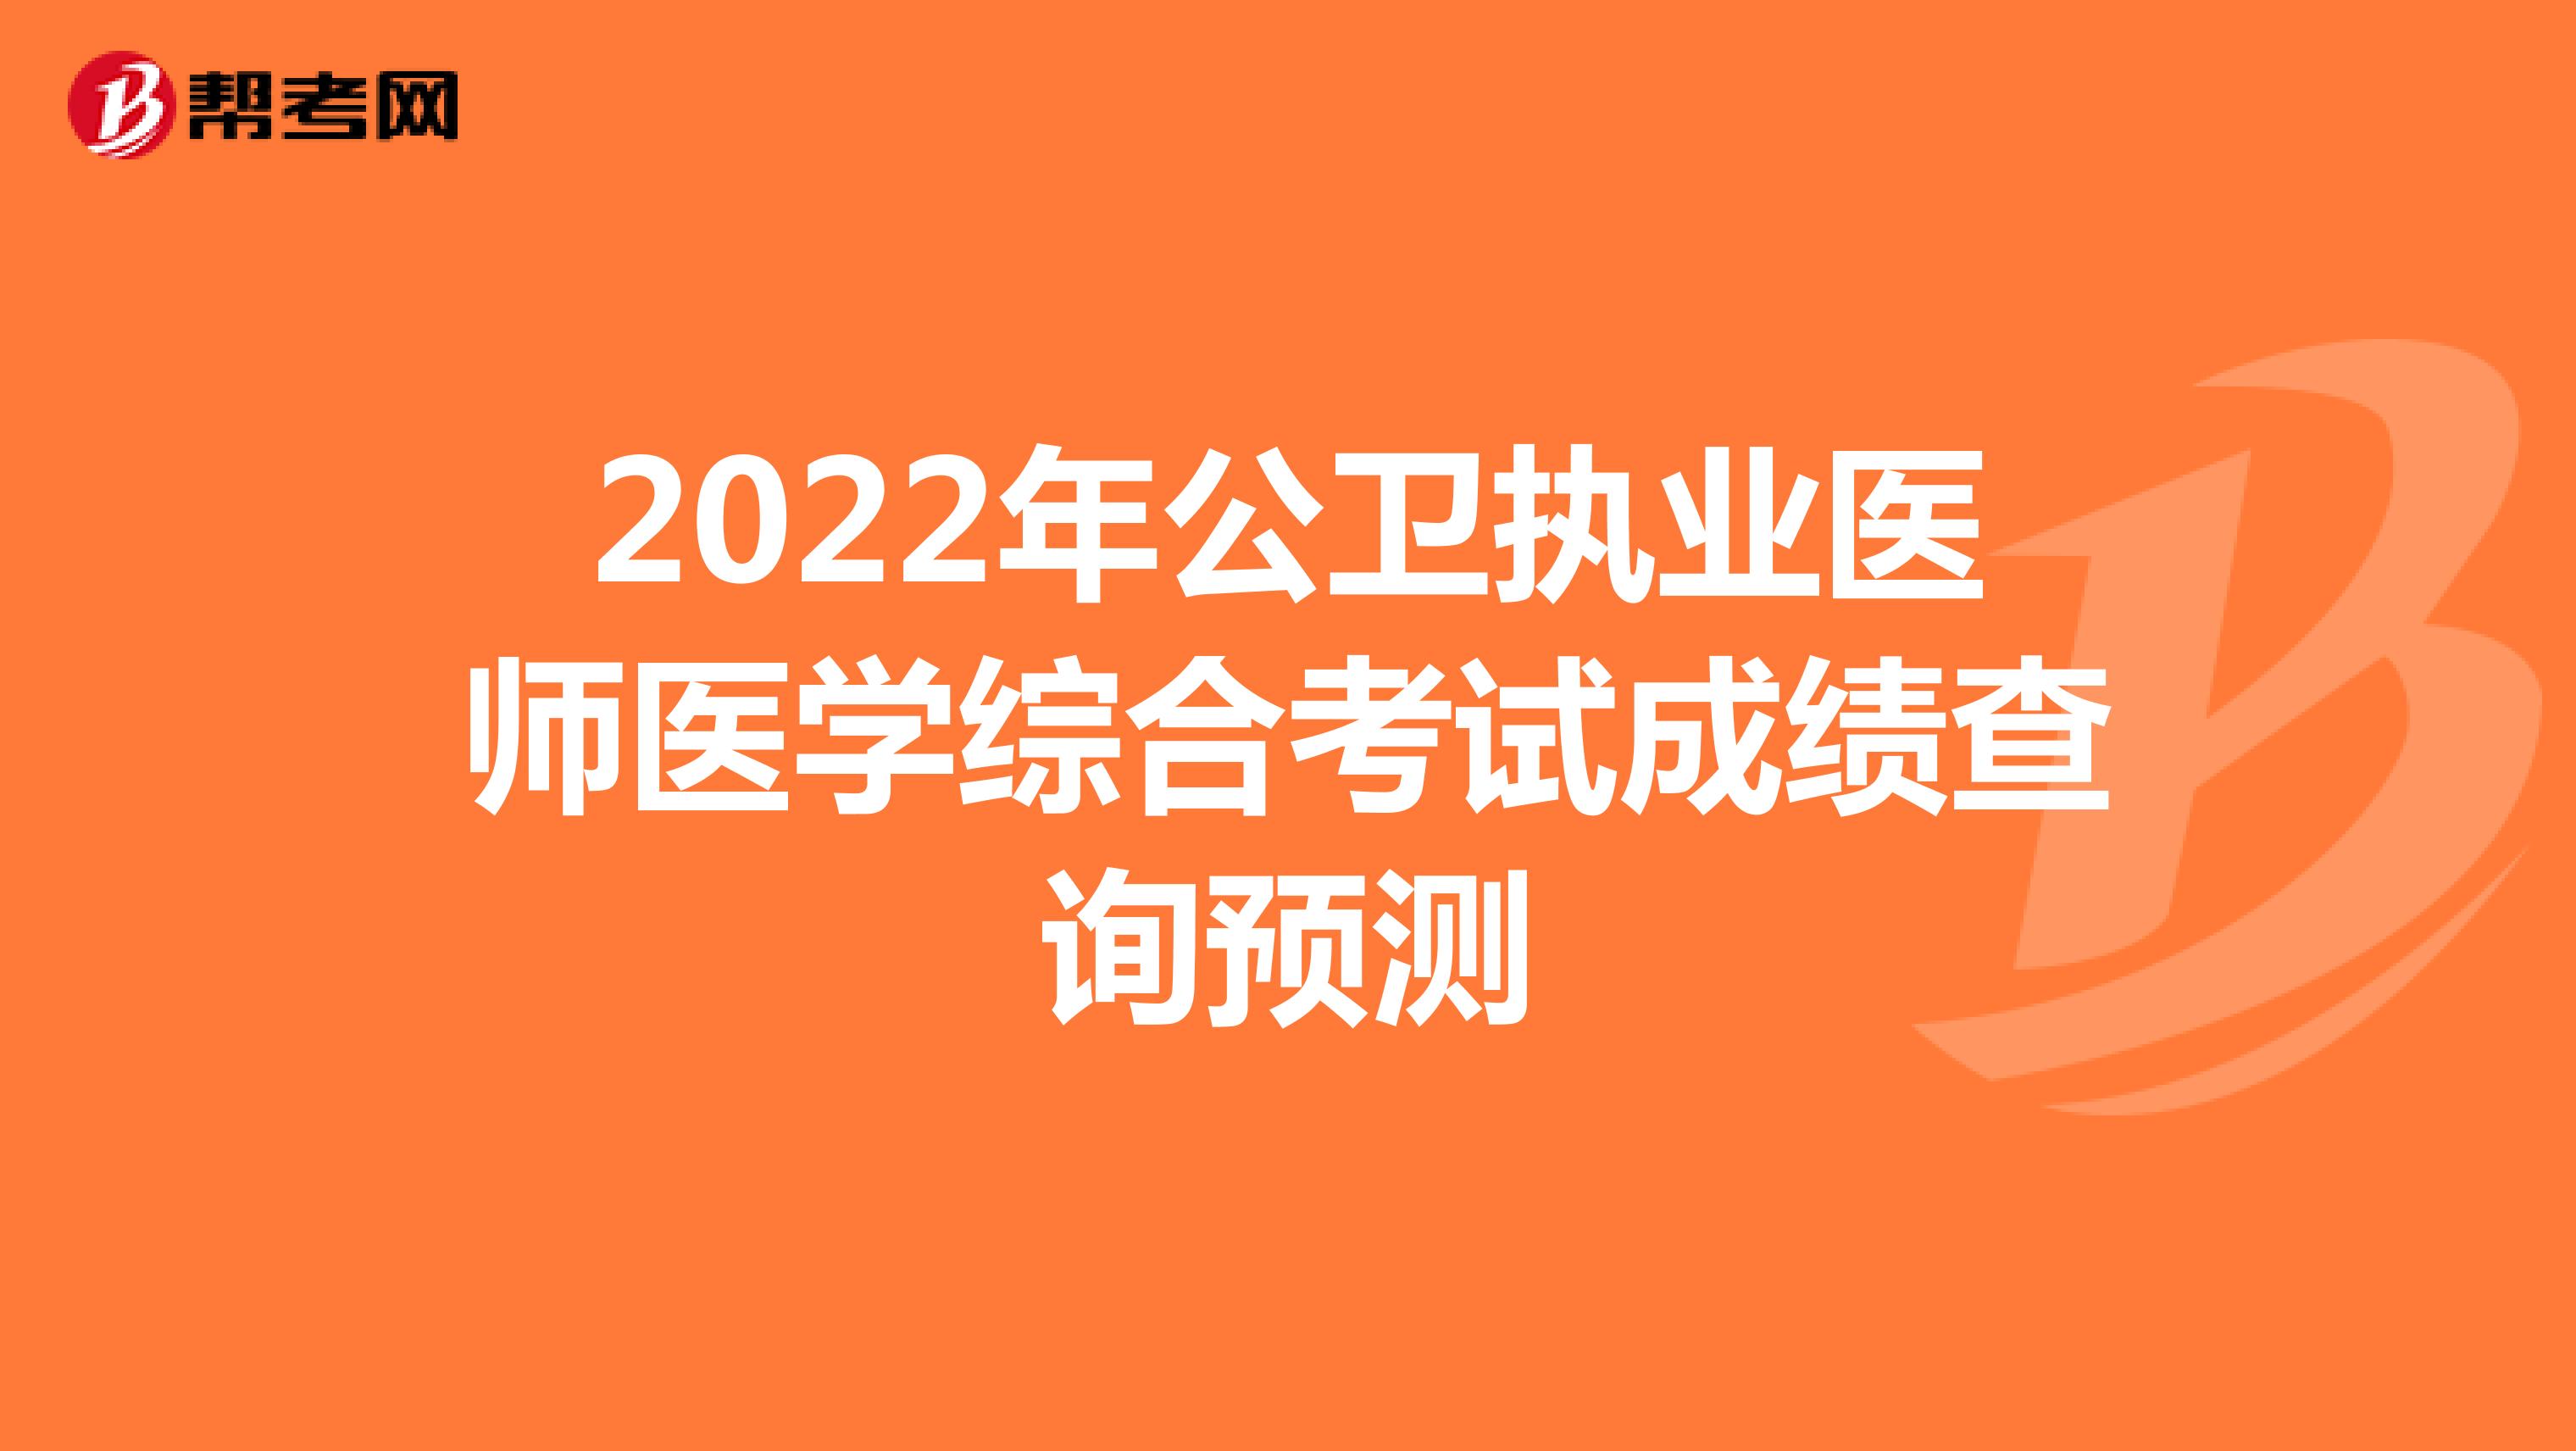 2022年公卫执业医师医学综合考试成绩查询预测